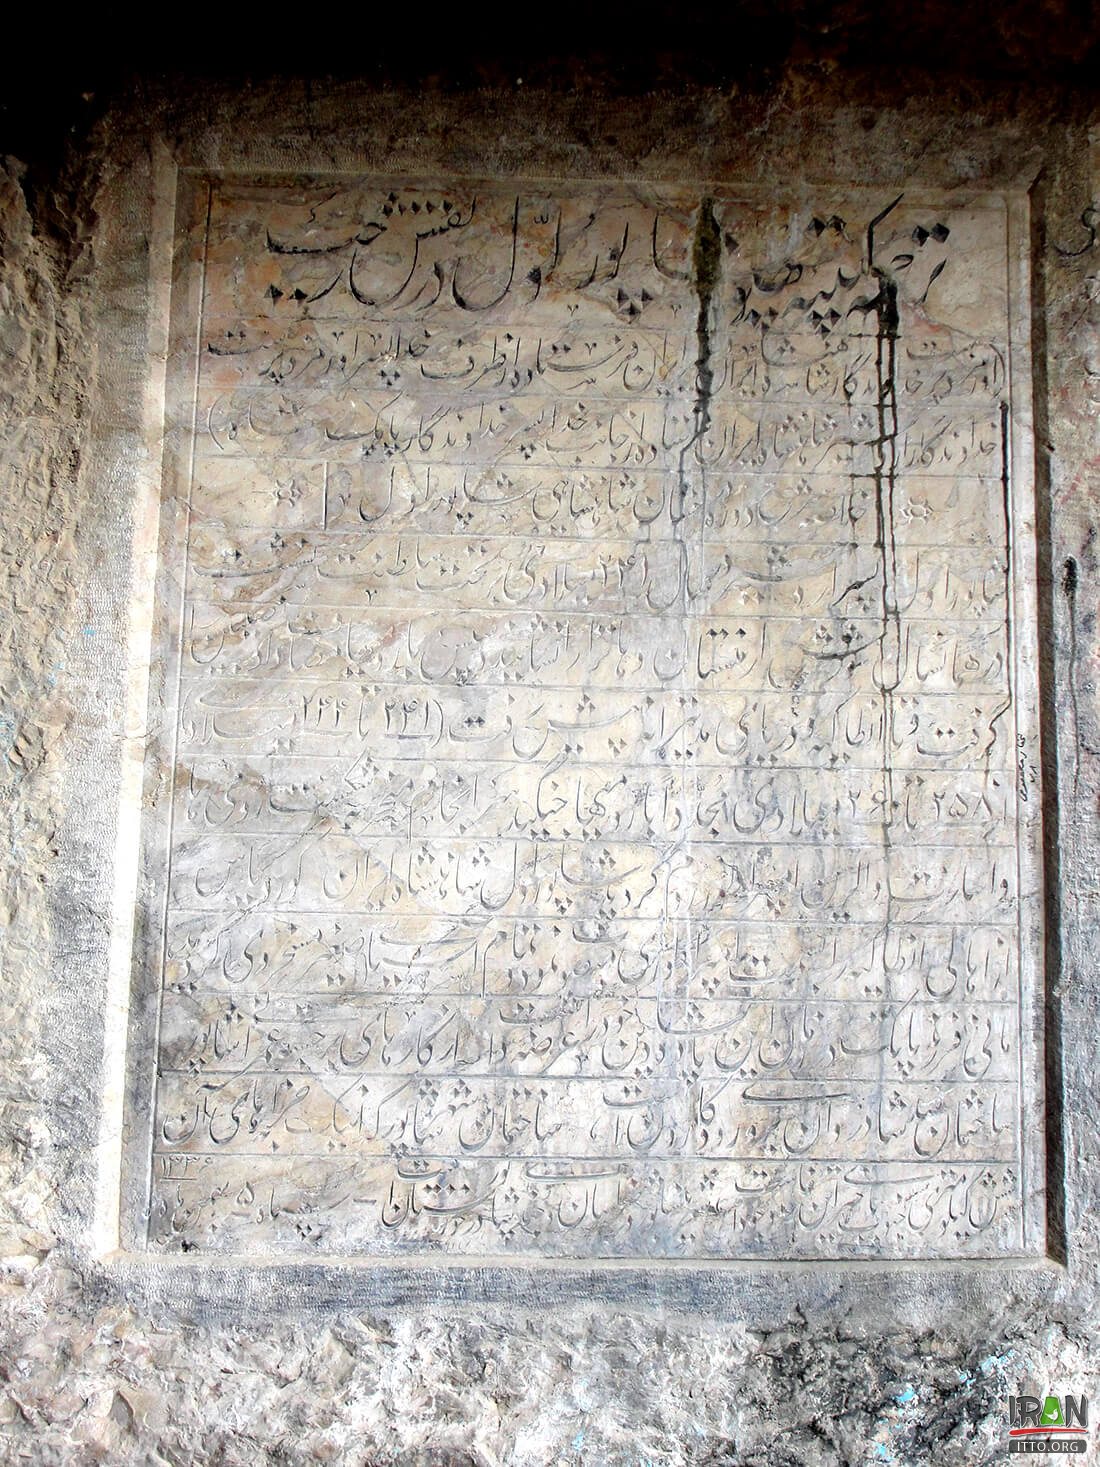 Naqsh-e-Rajab Engraving,Naqsh-e Rajab,نقش رجب,naghsherajab,naghsh rajab,naqsh rajab,naqsherajab,naqshrajab,persepolis,تخت جمشید,marvdasht,مرودشت